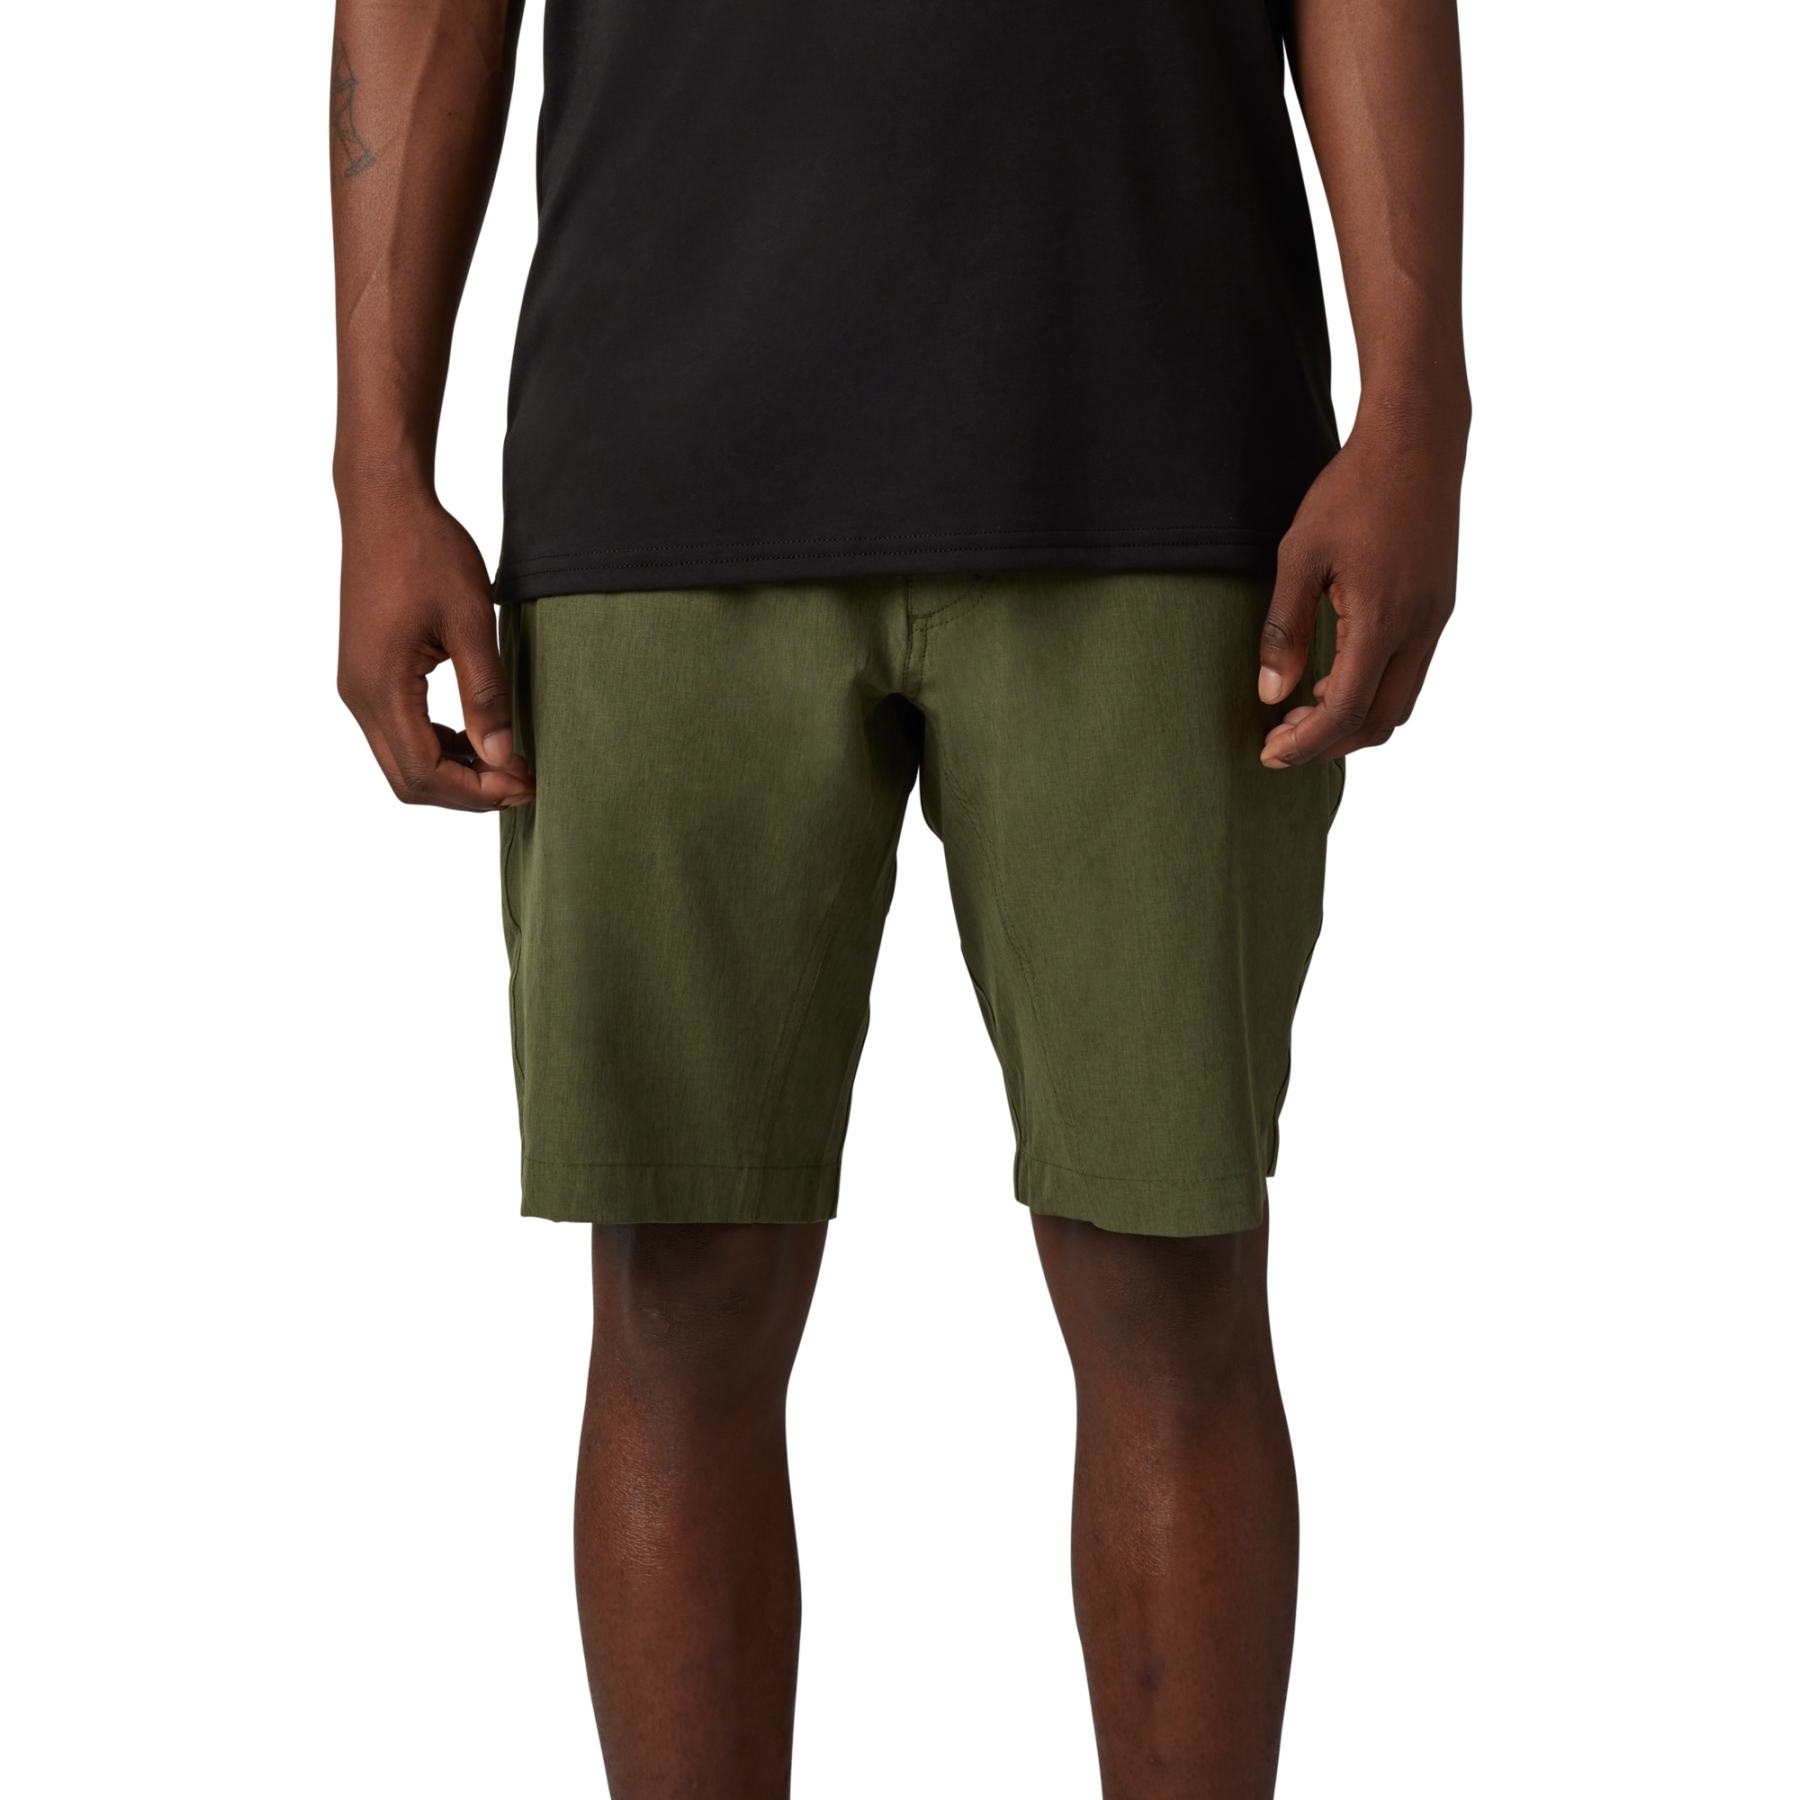 Produktbild von FOX Machete Tech Shorts 4.0 Herren - olive green